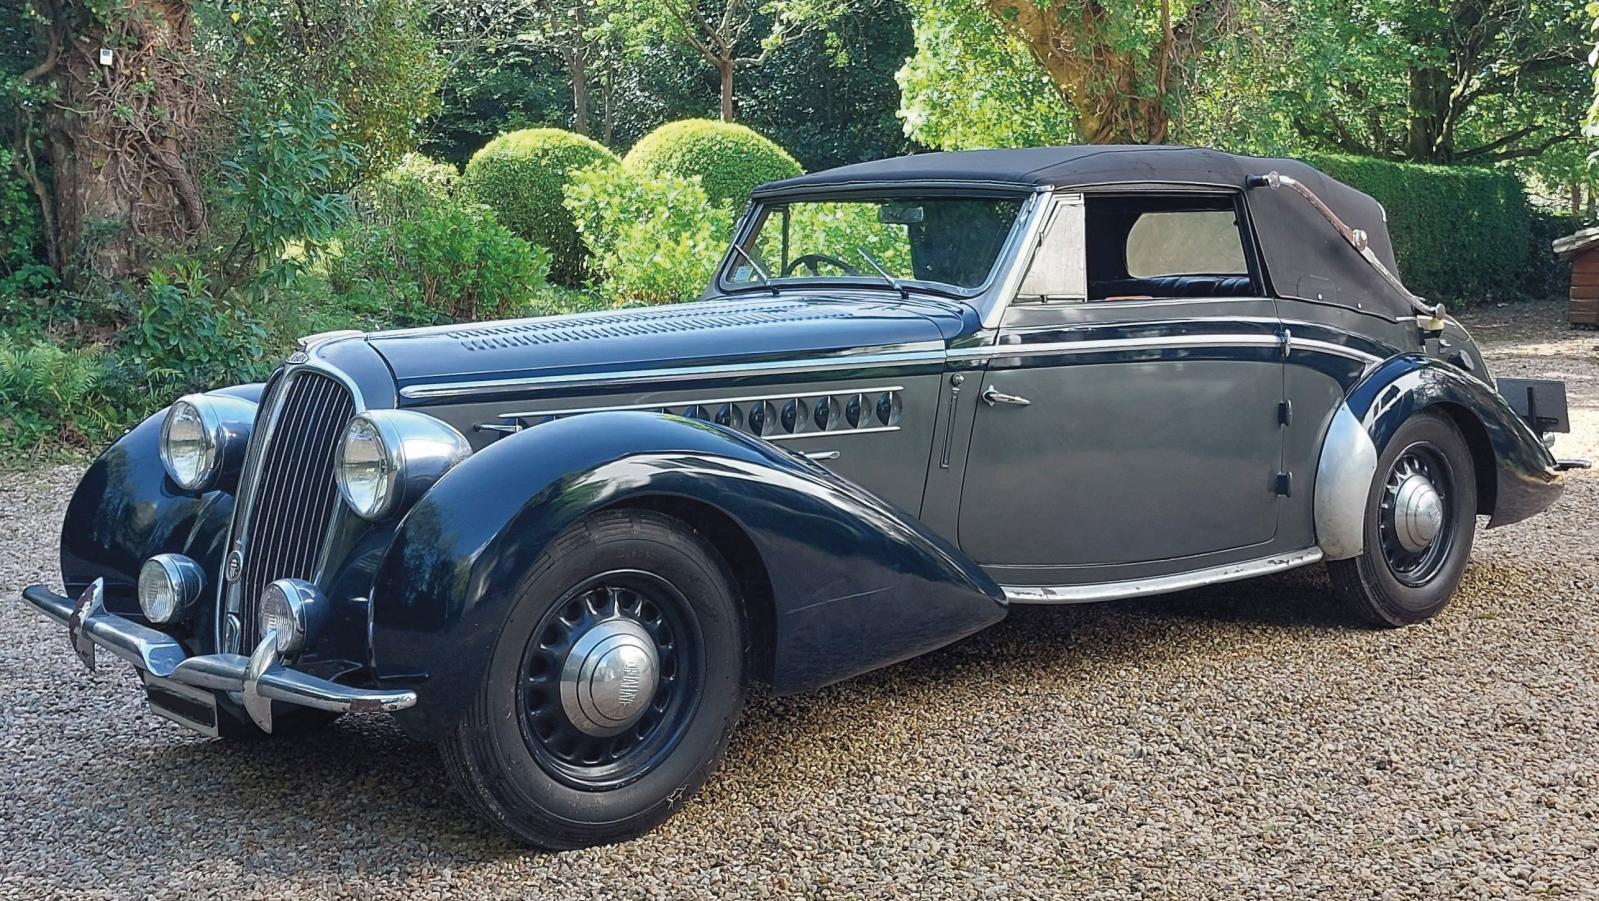 Delahaye 148L Cabriolet Chapron, 1939, châssis n° 60848, numéro Chapron «6070». Estimation :... Delahaye, le luxe et l’élégance à l’ancienne